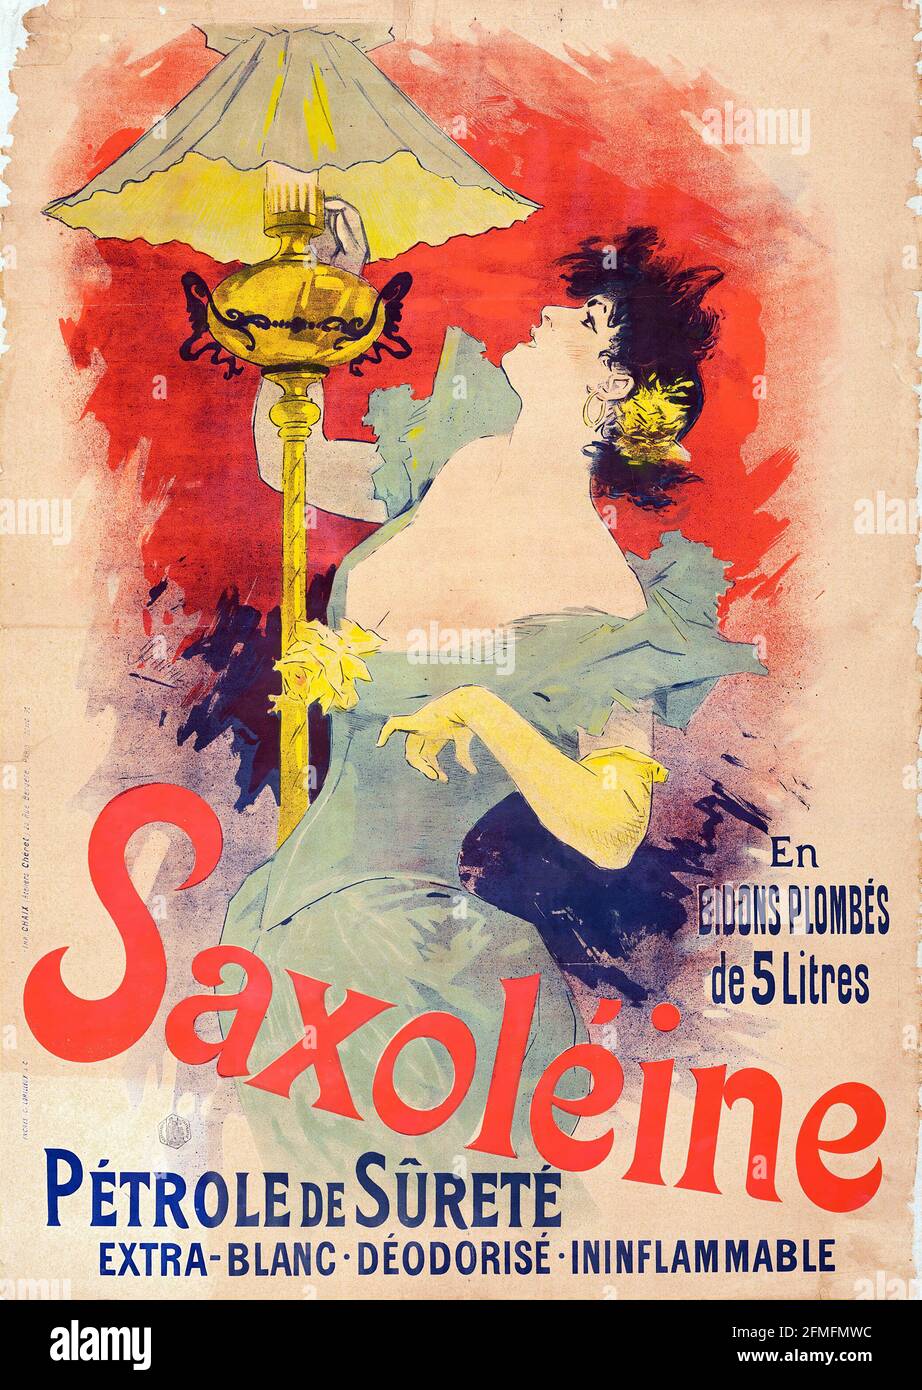 Jules Chéret - Saxoleine Petrole de sureté - 1890 - Poster la belle époque Foto Stock